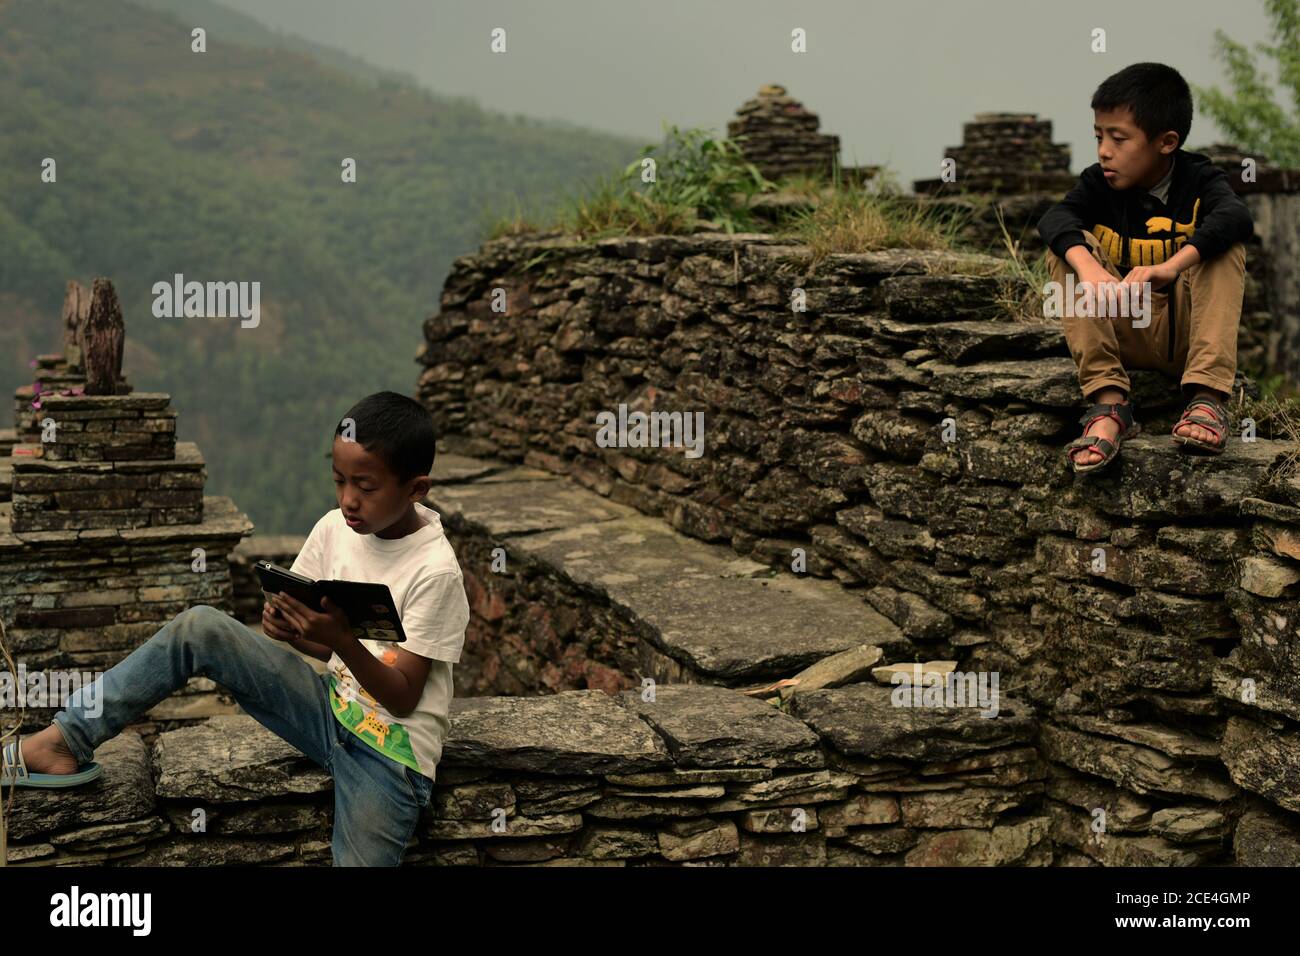 Un adolescent utilisant une tablette informatique dans un site du patrimoine culturel dans le village agricole de Sidhane, dans la région montagneuse de Panchase, au Népal. Banque D'Images